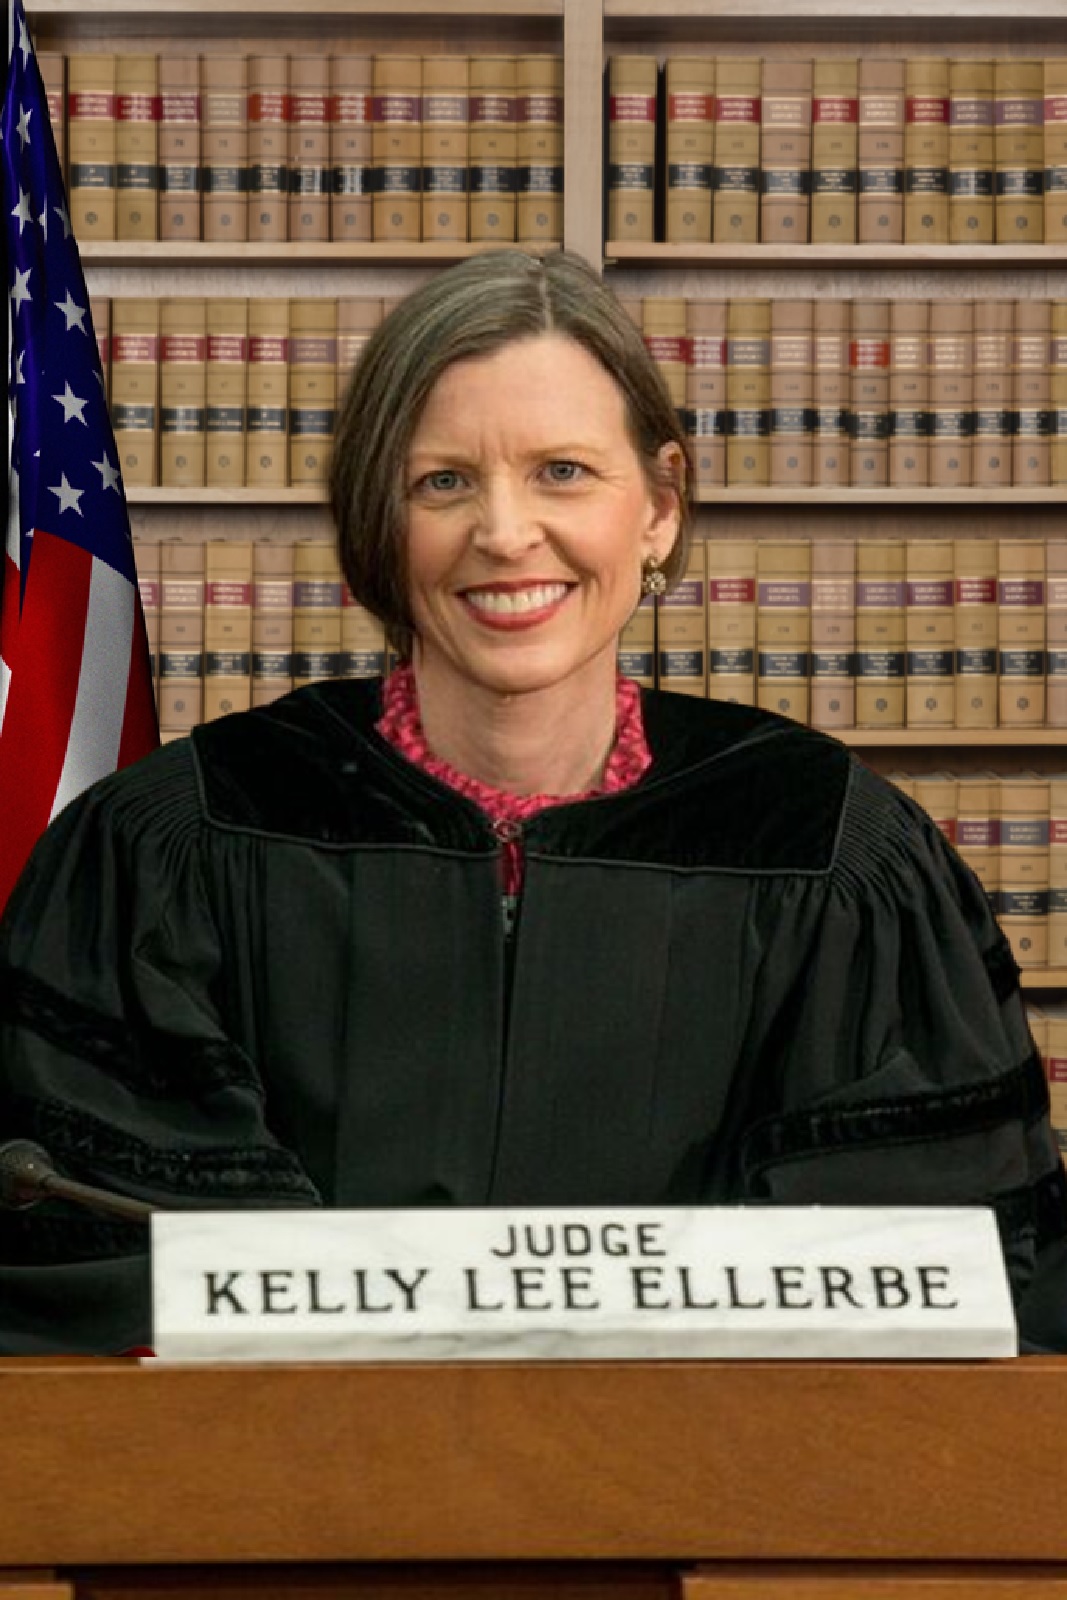 Judge Kelly Lee Ellerbe